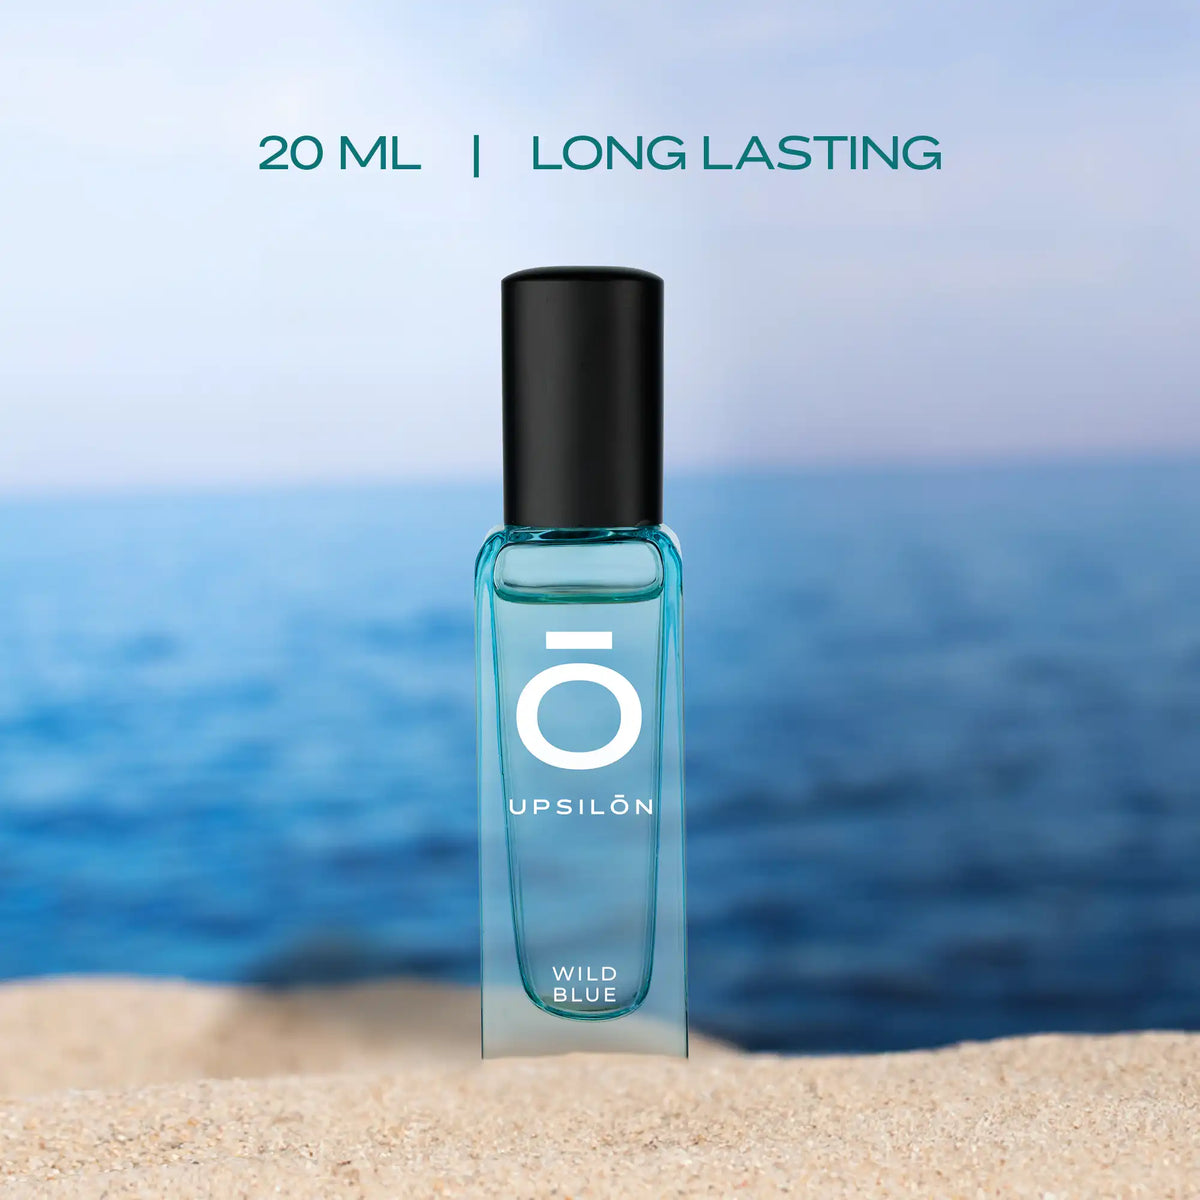 0ml bottle of Upsilon Wild Blue Eau de Parfum, a long-lasting men's fragrance with fresh, aquatic notes